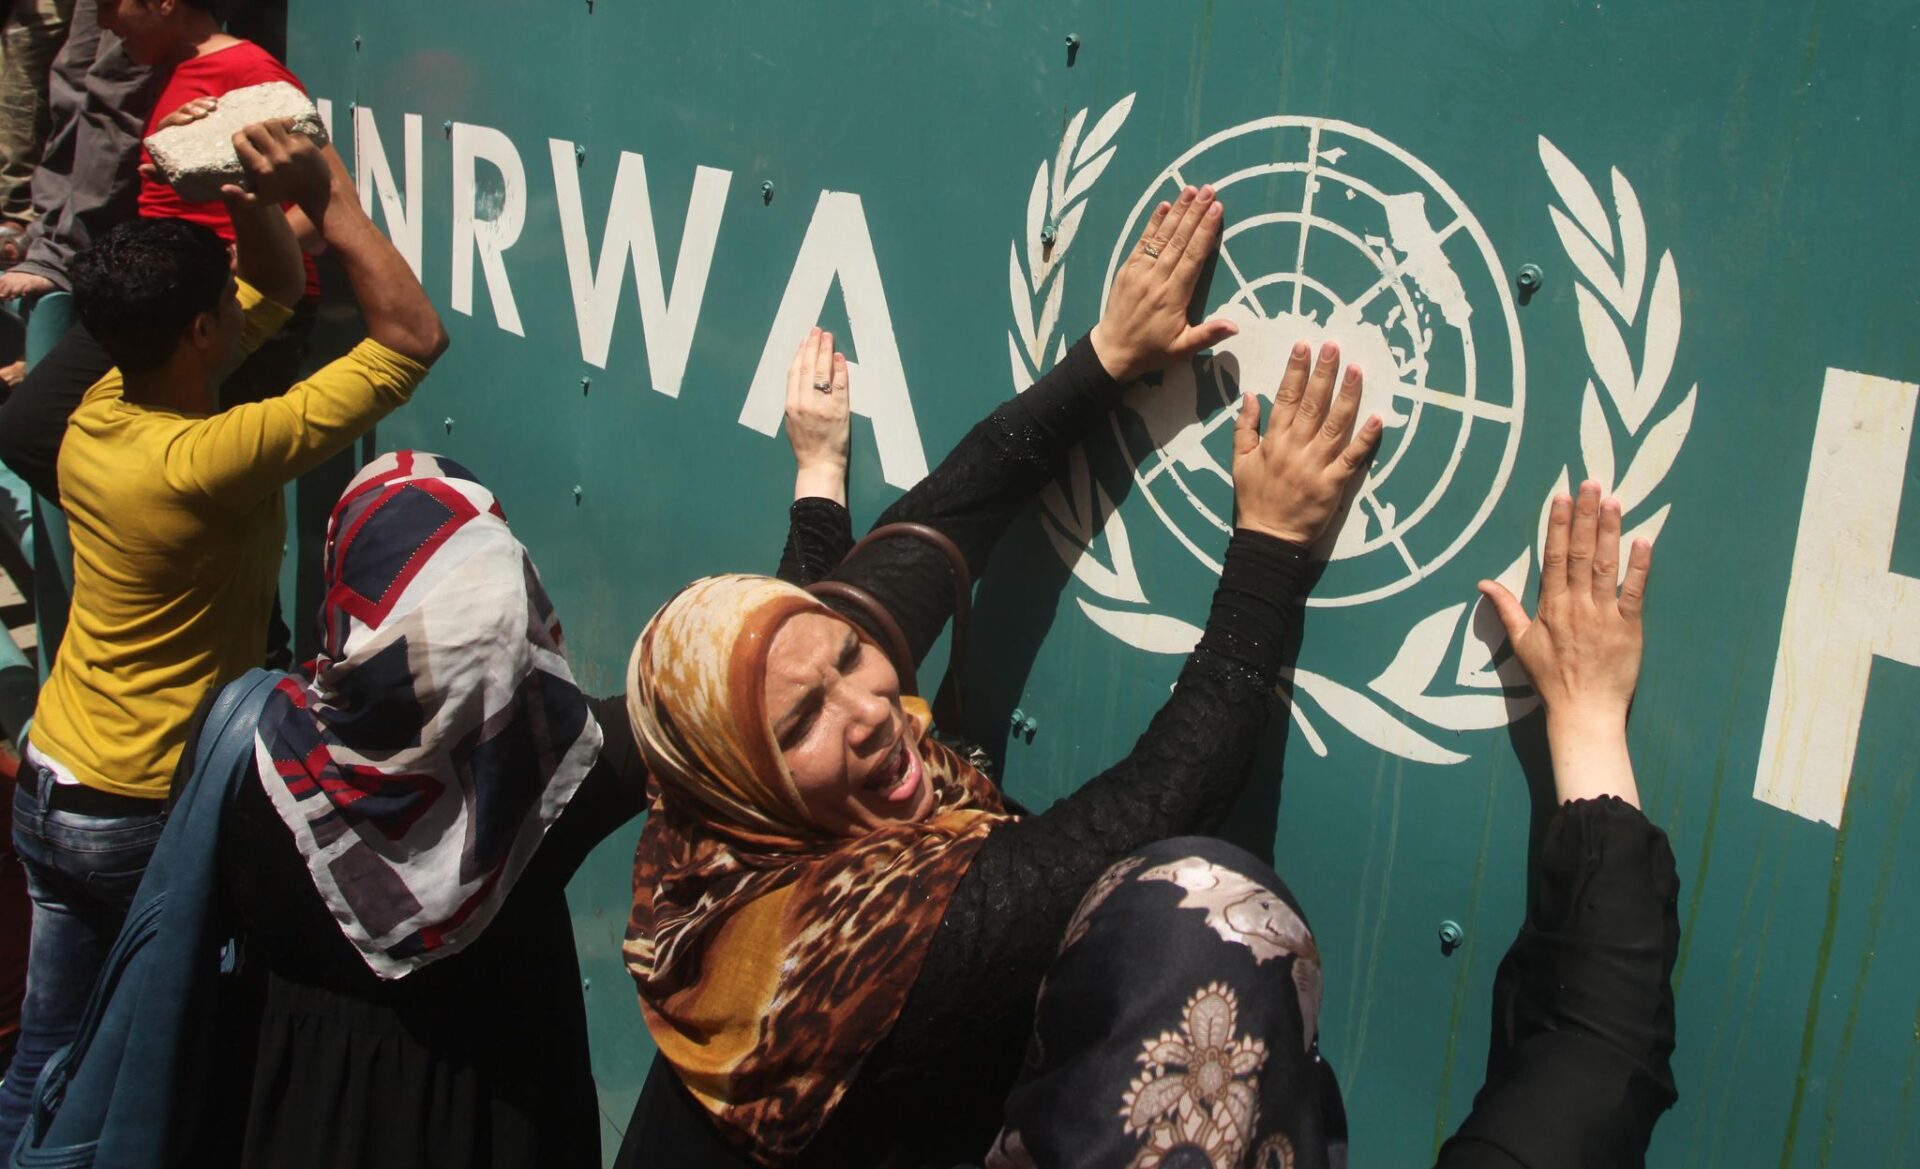 Palästinensische Anhänger der Volksfront für die Befreiung Palästinas (PFLP) nehmen an einem Protest gegen die Kürzung von Bildungsprogrammen des UNRWA teil. (zu dpa «Bericht: UNRWA-Mitarbeiter an Entführung von Israelin beteiligt»)